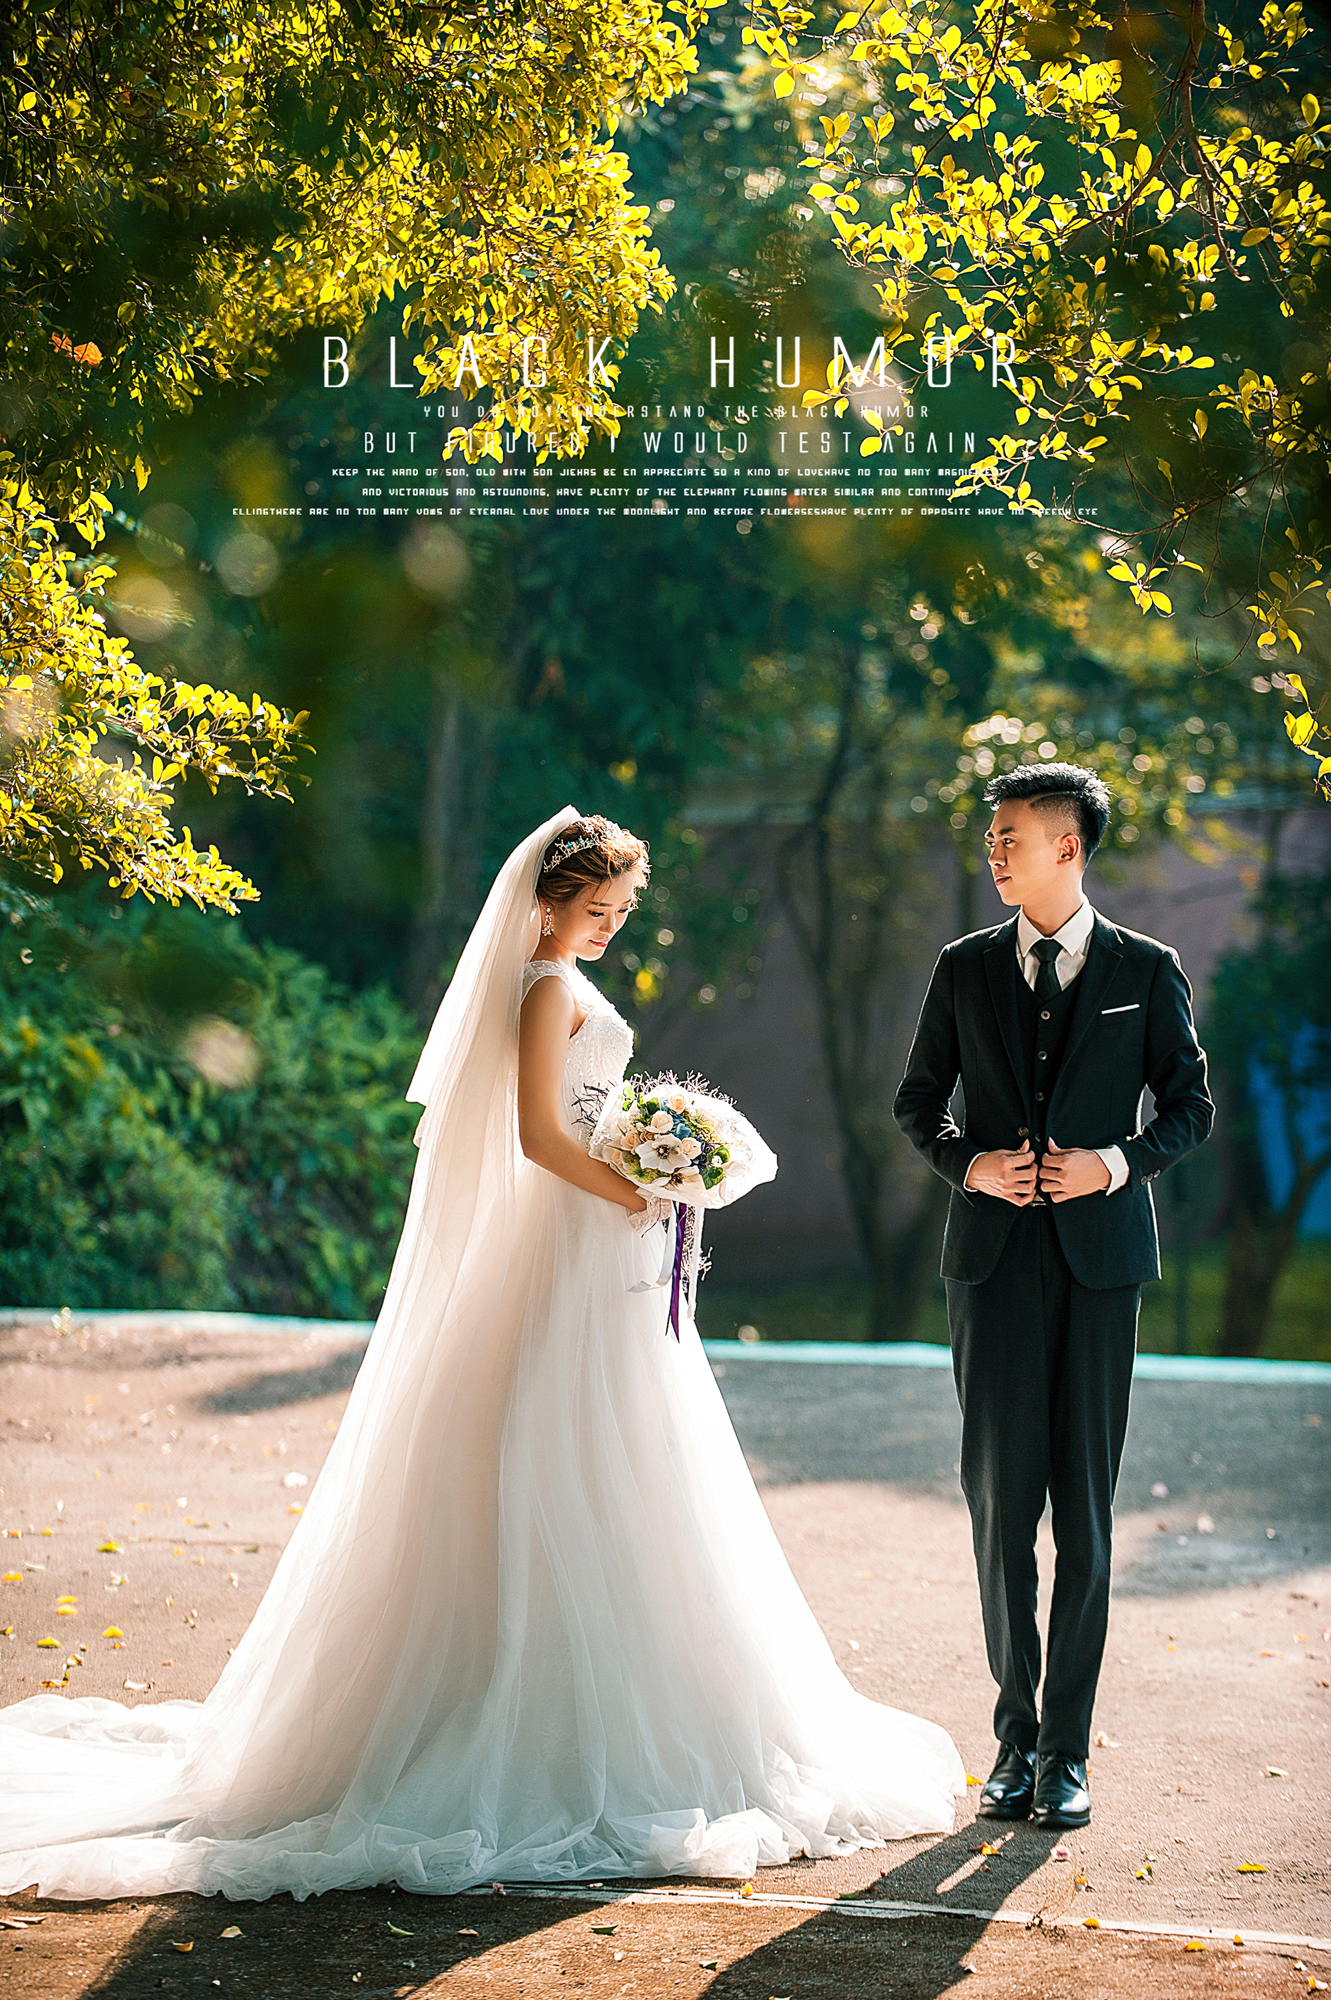 2017年11月广州结婚照,茂名婚纱照,婚纱照图片